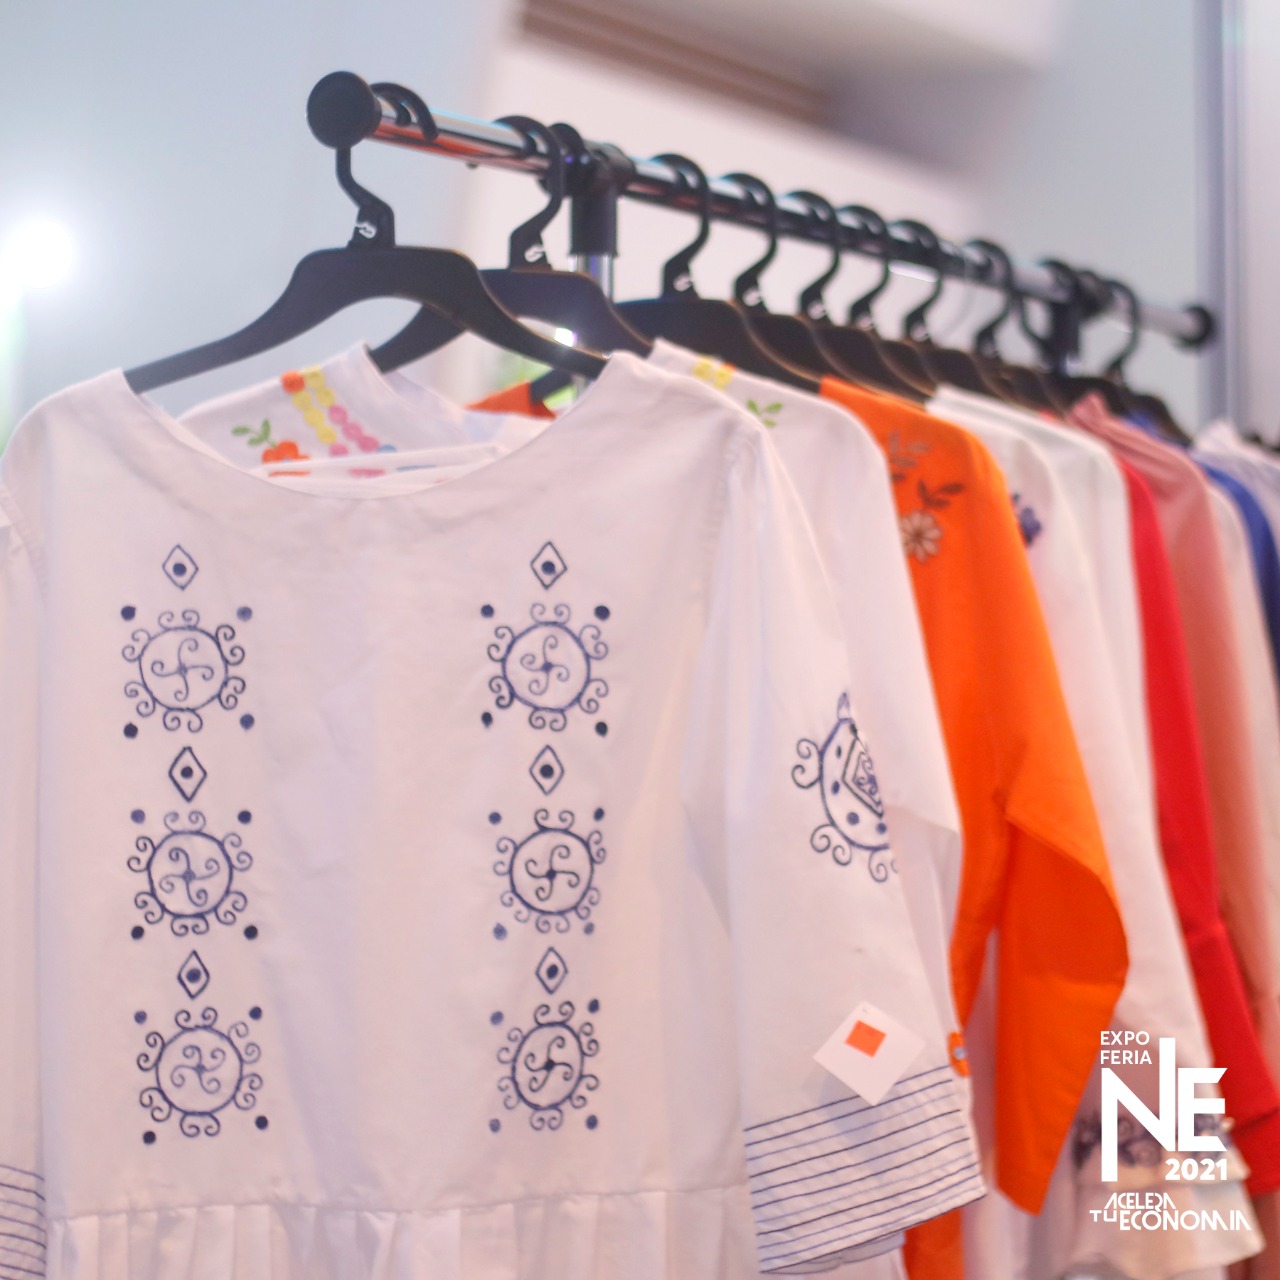 Emprendimiento de diseño y elaboración de ropa fomenta cultura nicaragüense  - Nicaragua Emprende